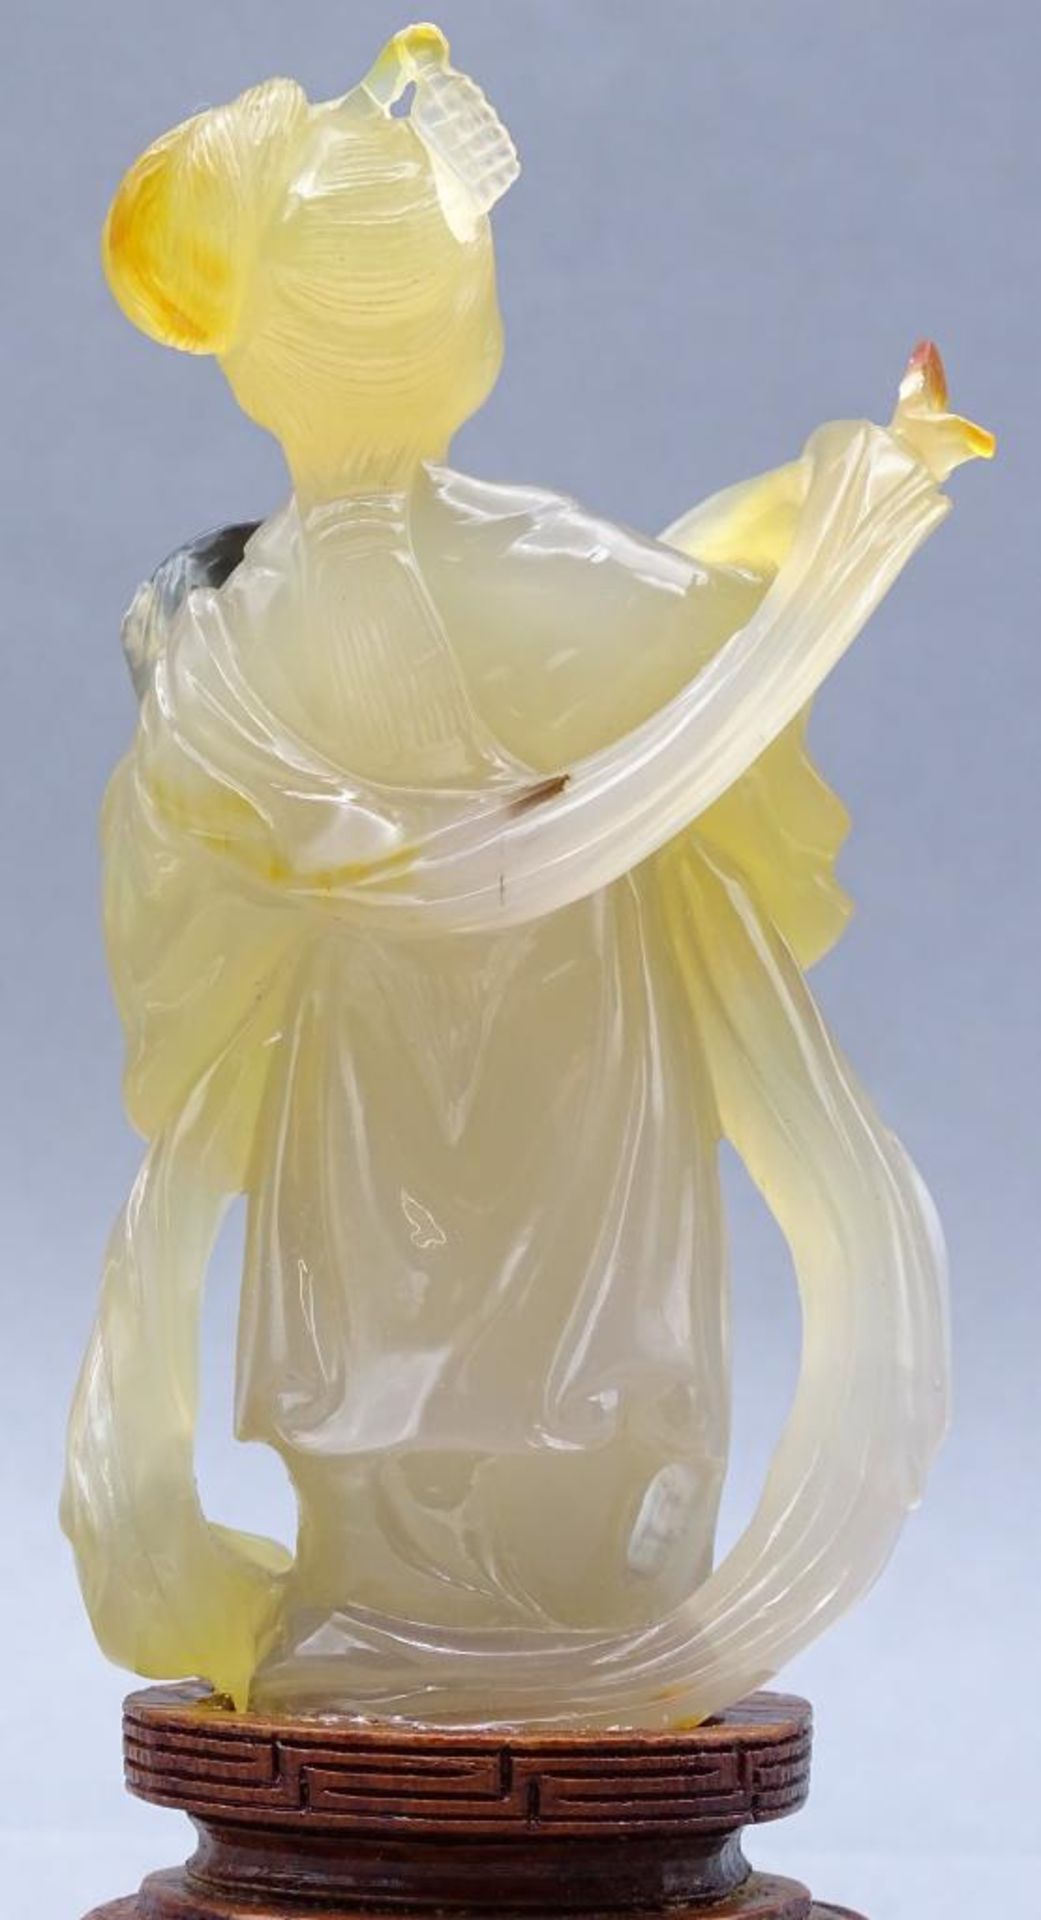 gelbe Jadeschnitzerei, Chinesin mit Fächer auf Holzsockel, China, 18/19. Jhd? , H-ca. 14 cm, rechte - Bild 3 aus 7